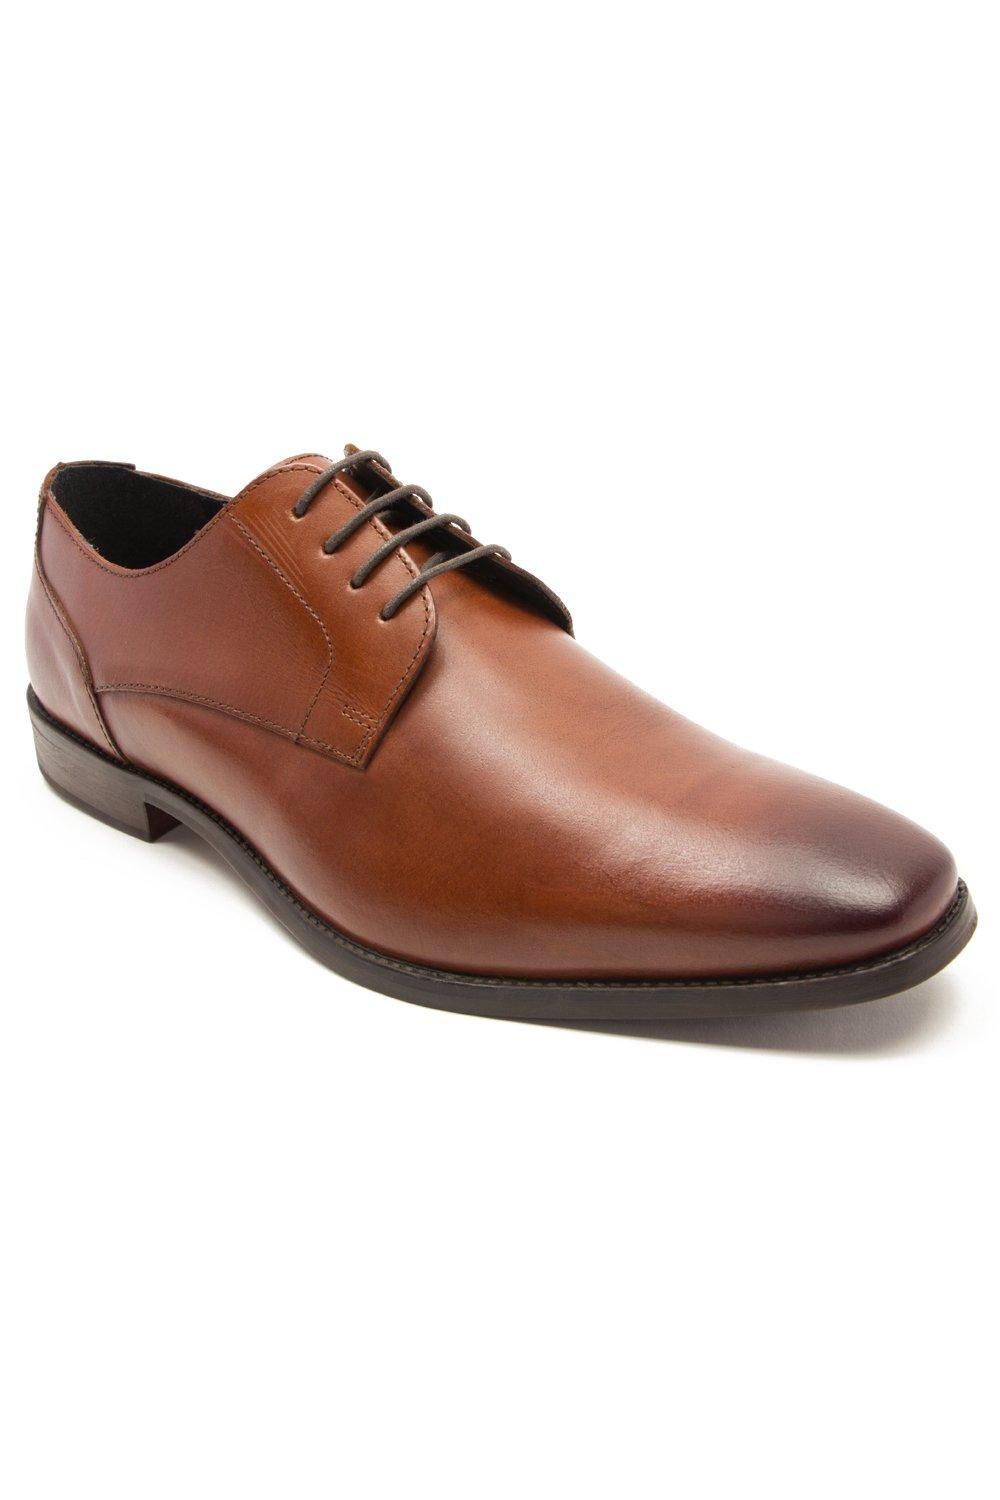 Формальные кожаные туфли дерби на шнуровке 'Falcon' Thomas Crick, коричневый